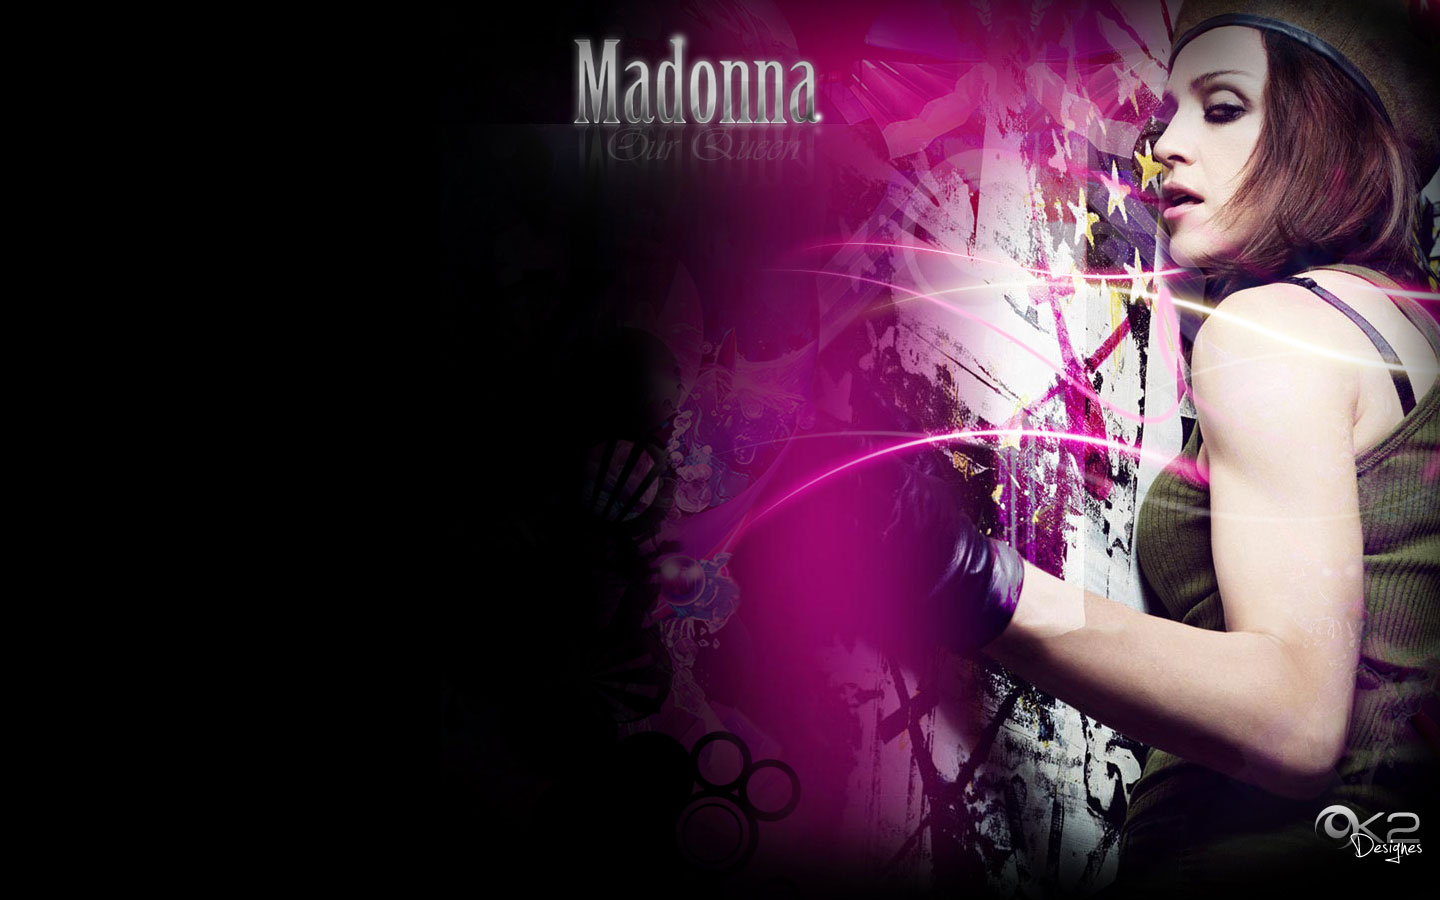 Madonna Wallpaper Queen Of Pop American Life Jpg